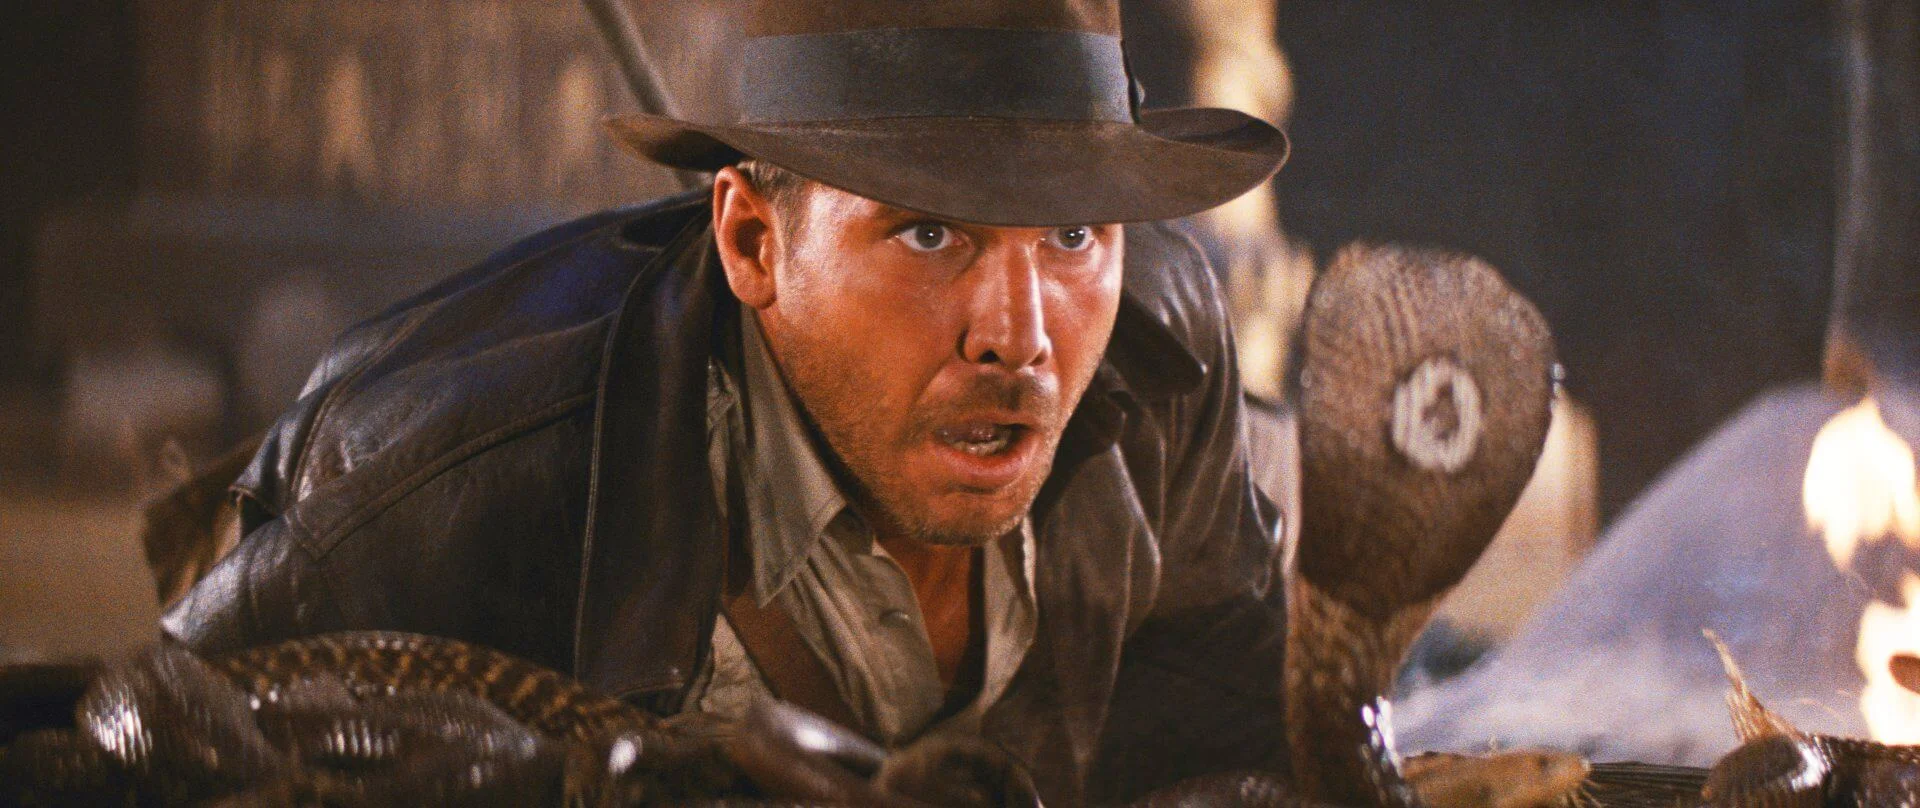 Mads Mikkelsennel erősít az Indiana Jones 5.